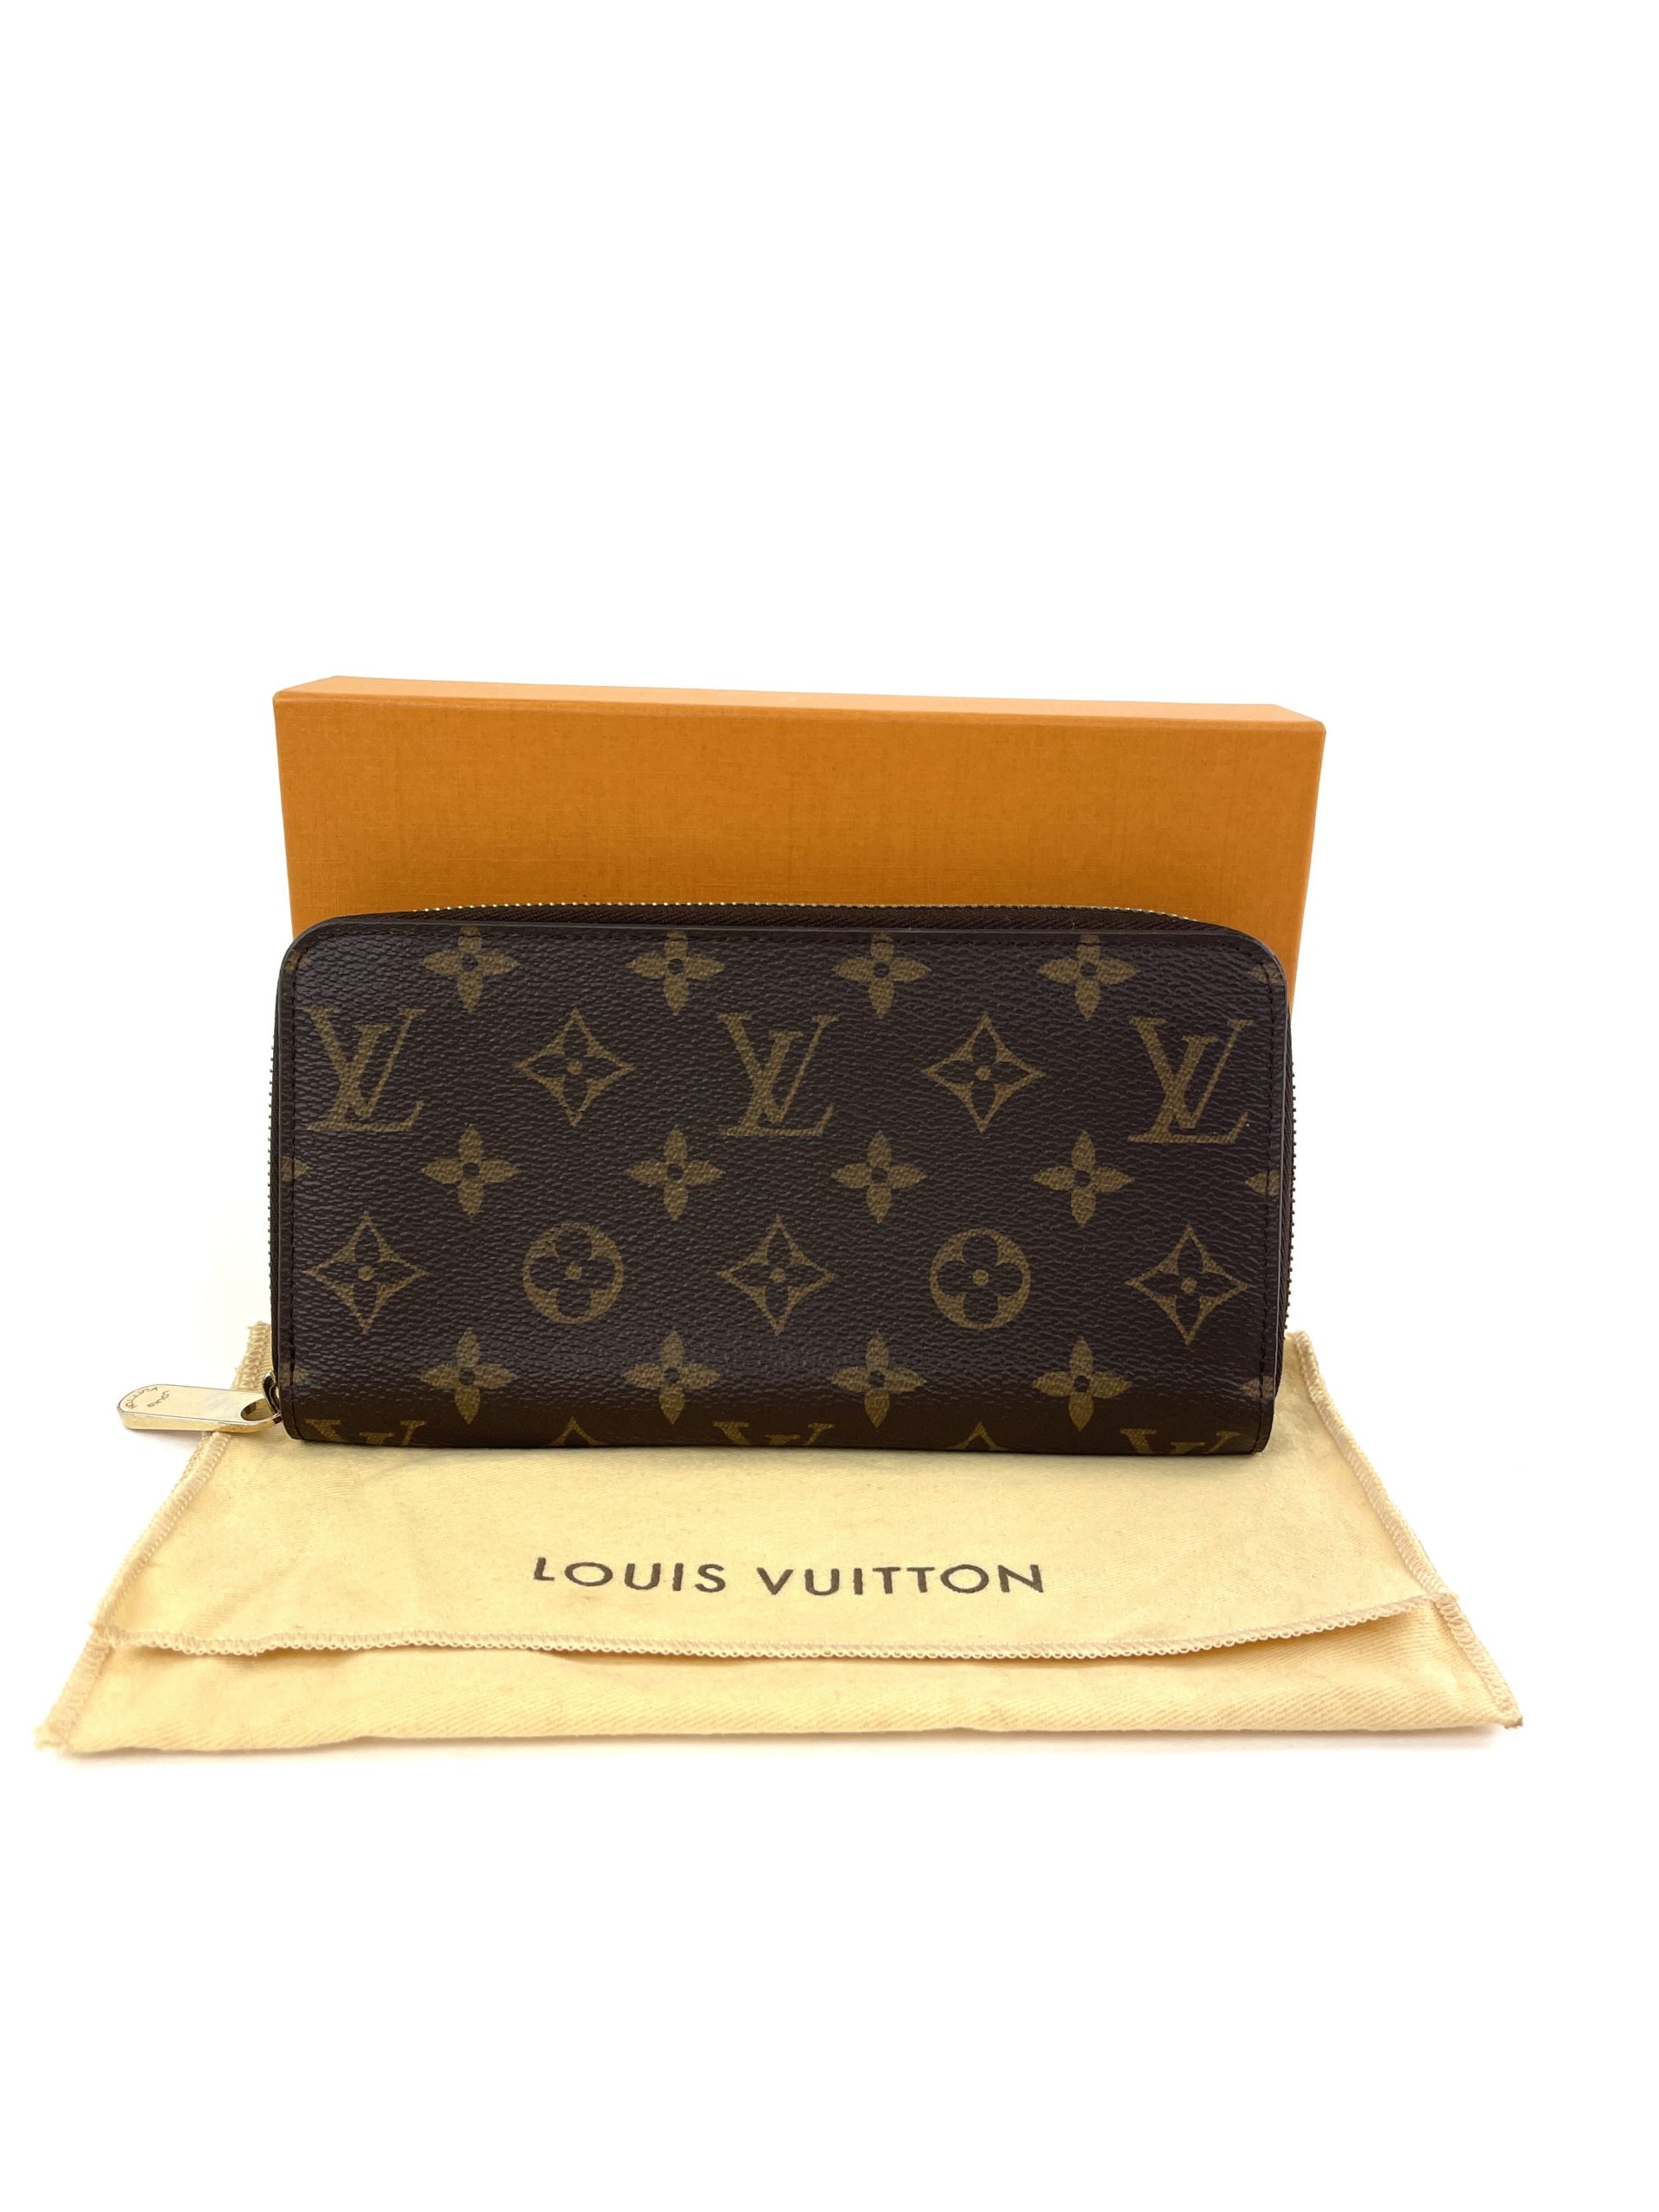 Louis Vuitton Monogram Zippy Wallet M41894 Rose ballerine Round